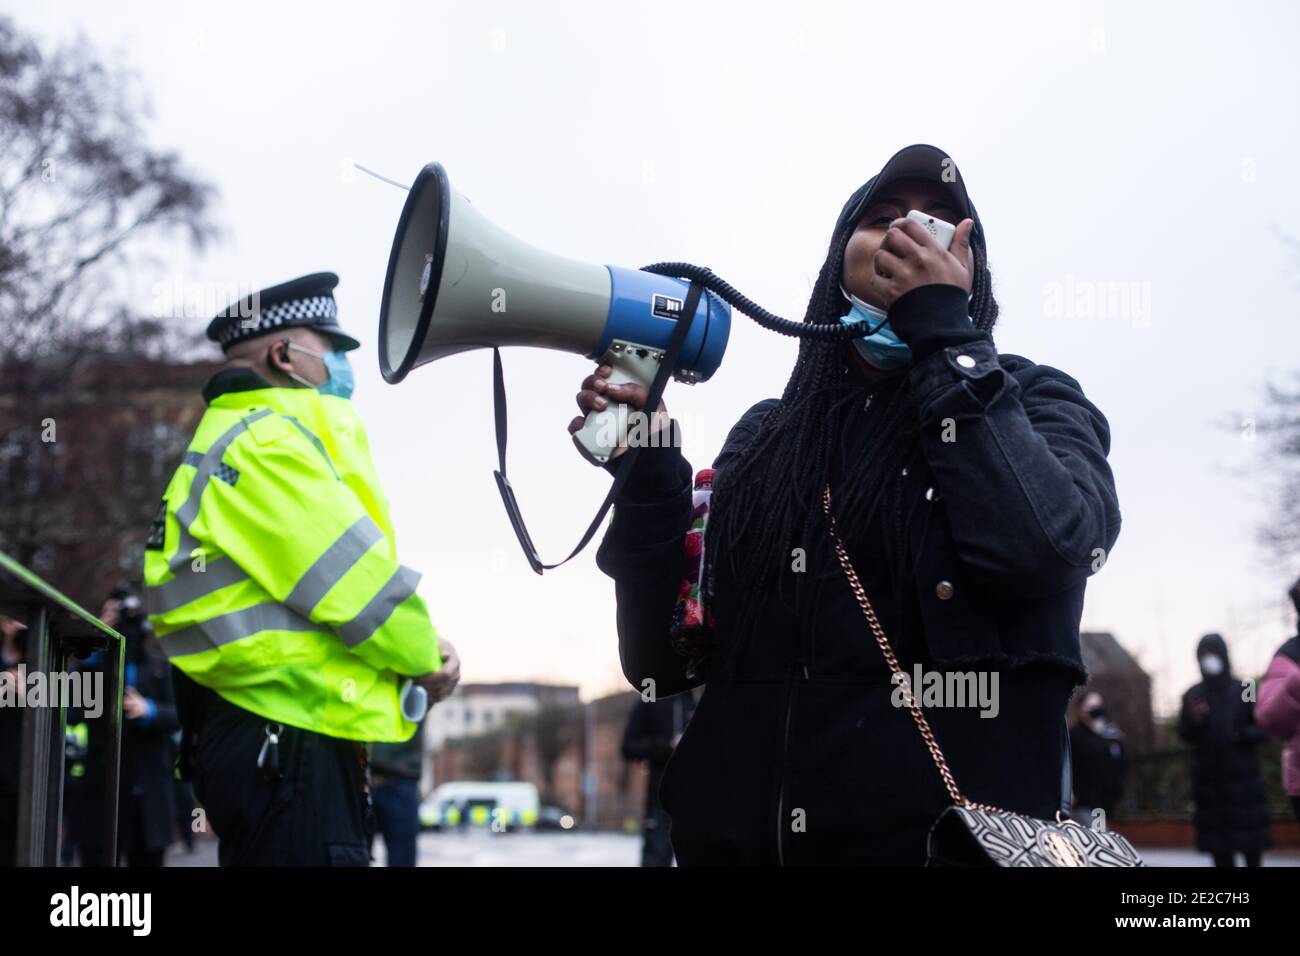 Les manifestants se réunissent à l'extérieur du poste de police de Cardiff Bay en solidarité pour obtenir des réponses et justice pour la mort de Mohamud Hassan, 24 ans, qui a été violemment arrêté par la police du sud du pays de Galles le 08/01/21 Banque D'Images